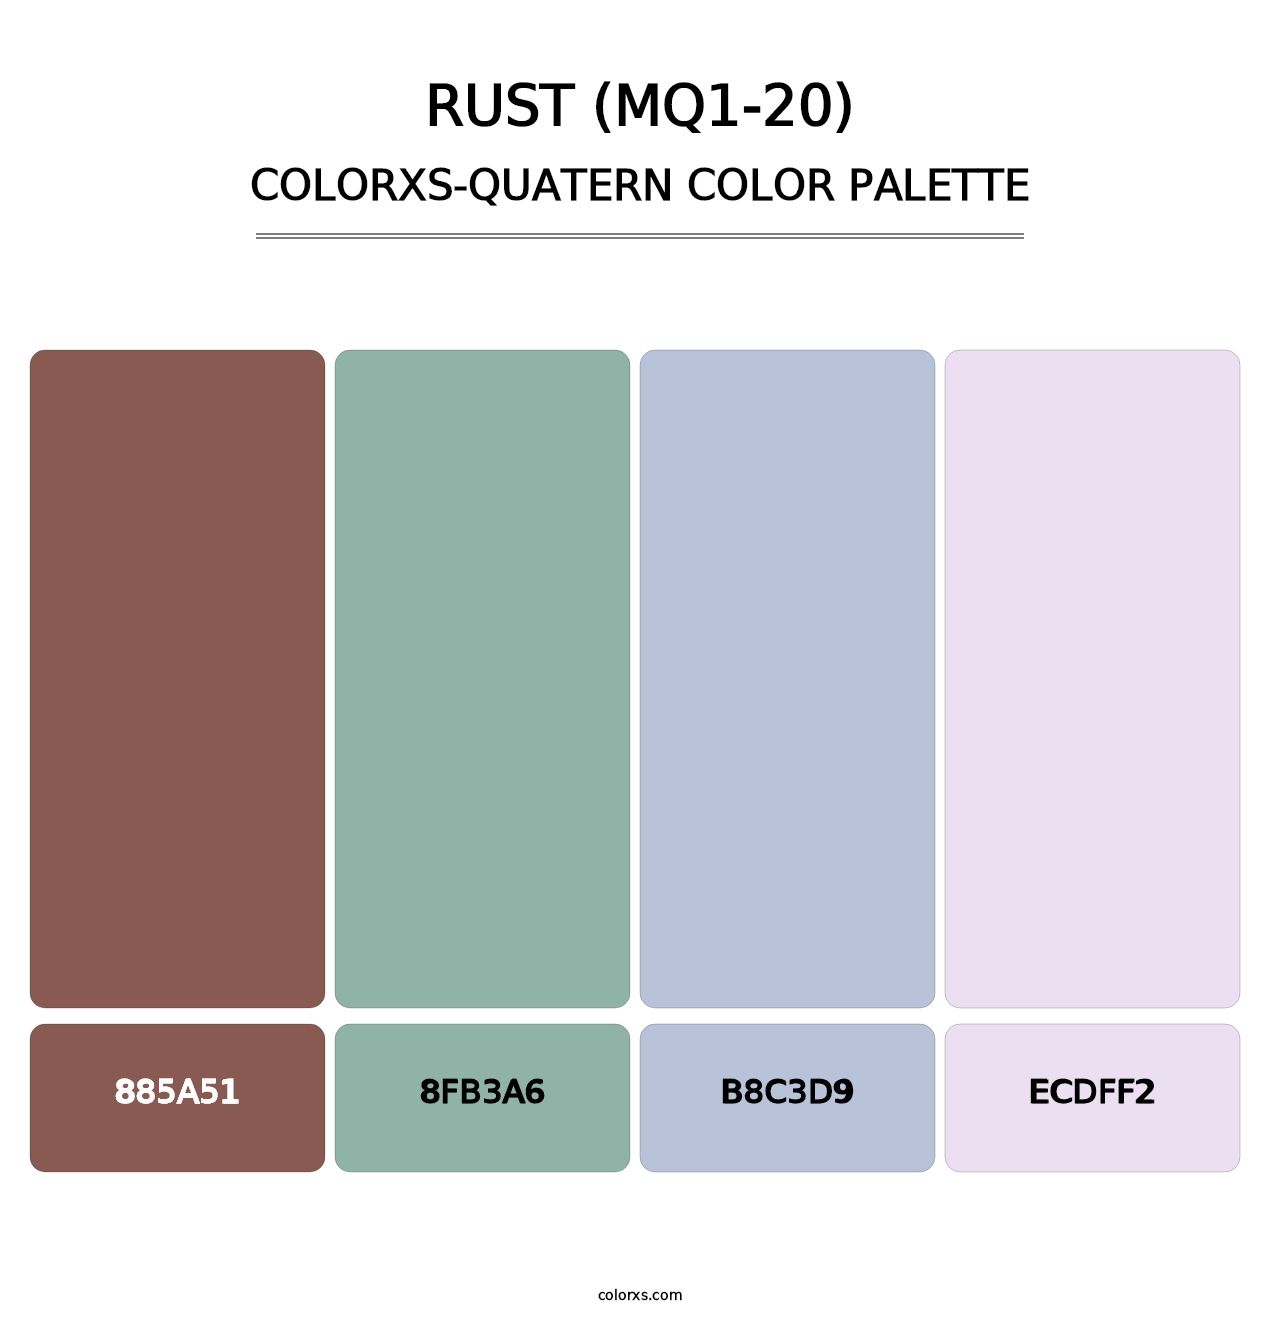 Rust (MQ1-20) - Colorxs Quatern Palette